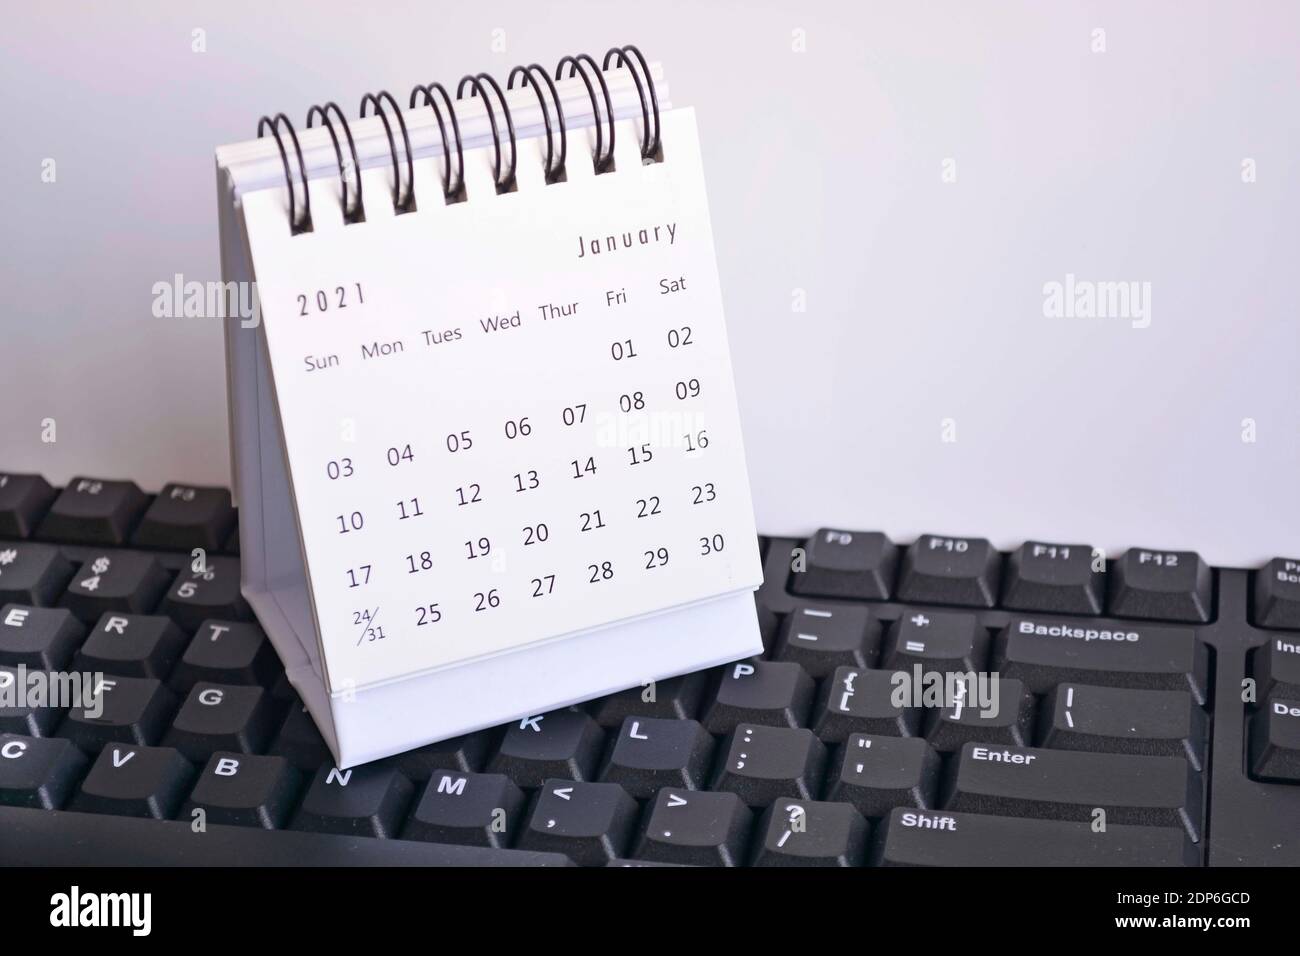 Calendrier blanc de janvier 2021 sur clavier avec arrière-plan blanc. Concept de la nouvelle année Banque D'Images